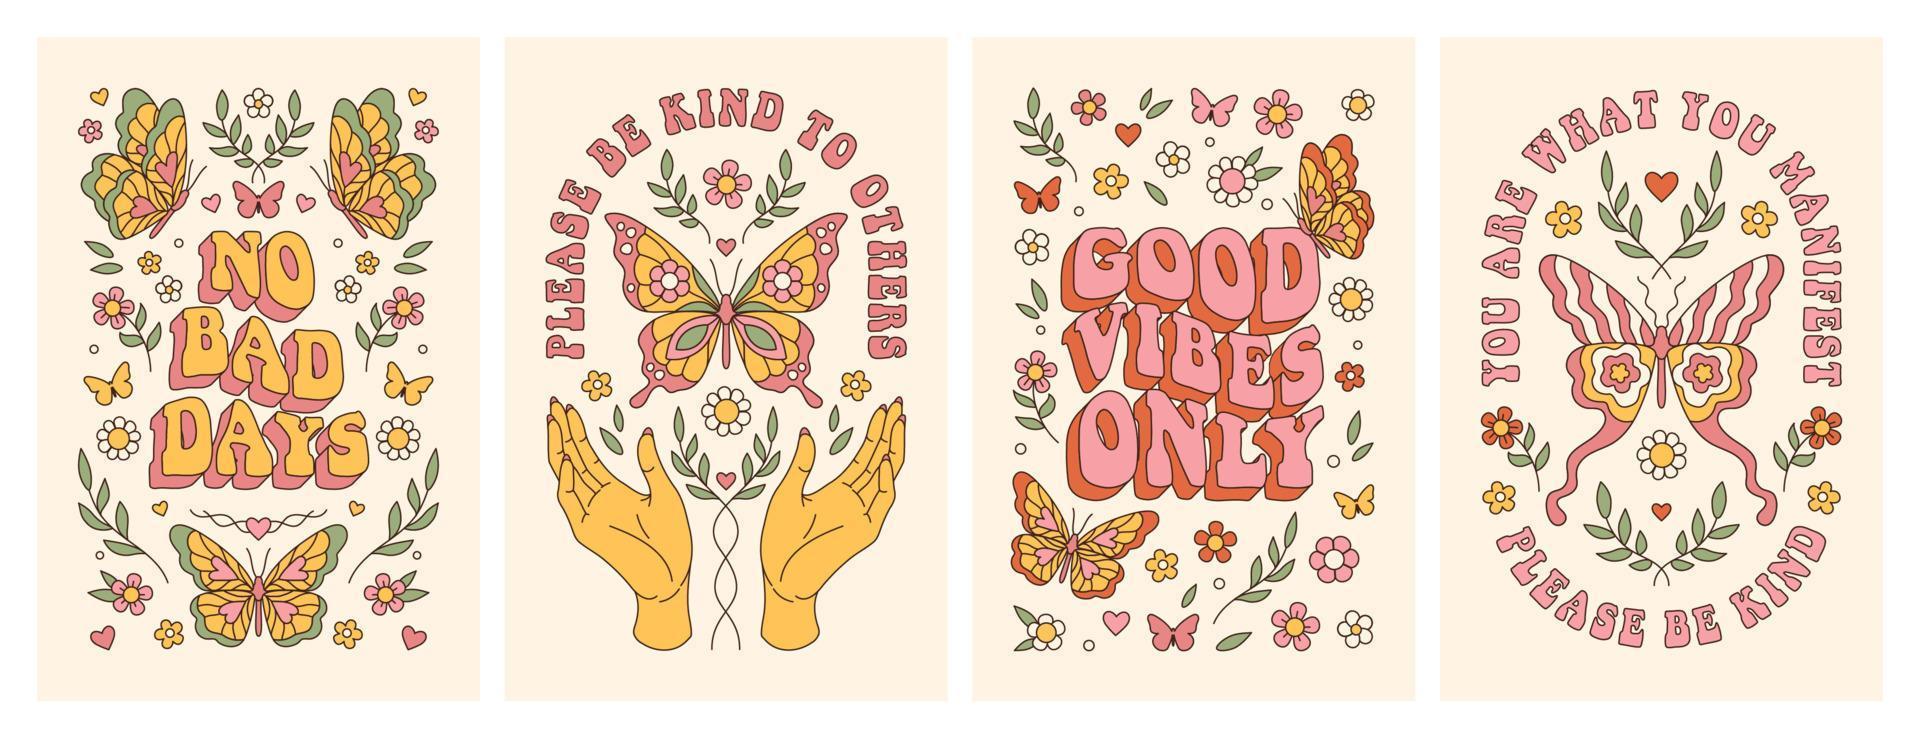 borboleta groovy, margarida, flor. pôsteres hippie dos anos 60 e 70. fundos românticos florais em estilo retro. vetor